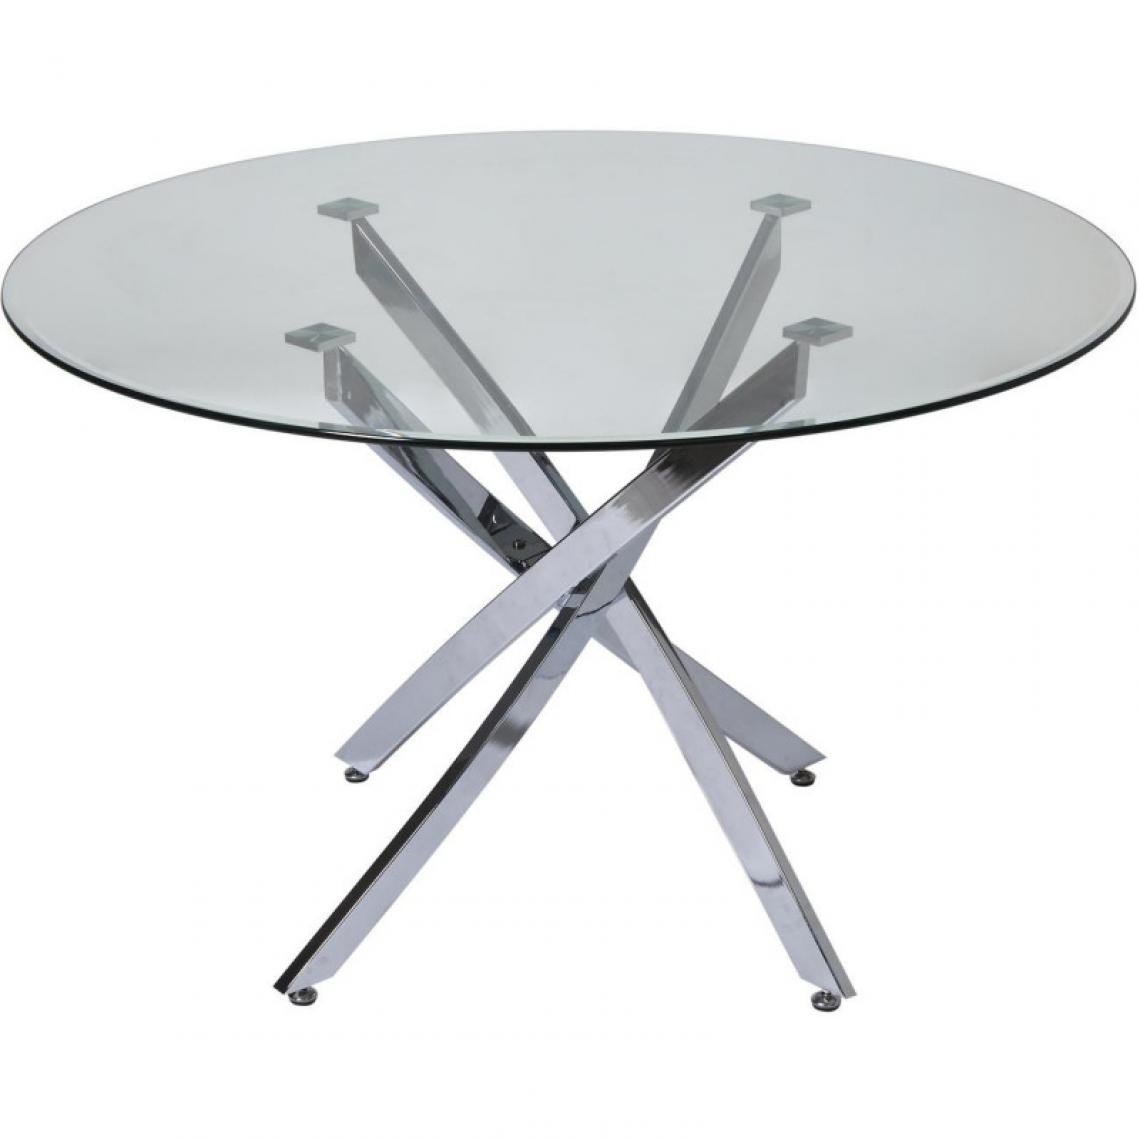 INTERNATIONAL DESIGN - Table à manger en verre - Eden - D 120 x H 75 cm - Argenté - Tables à manger